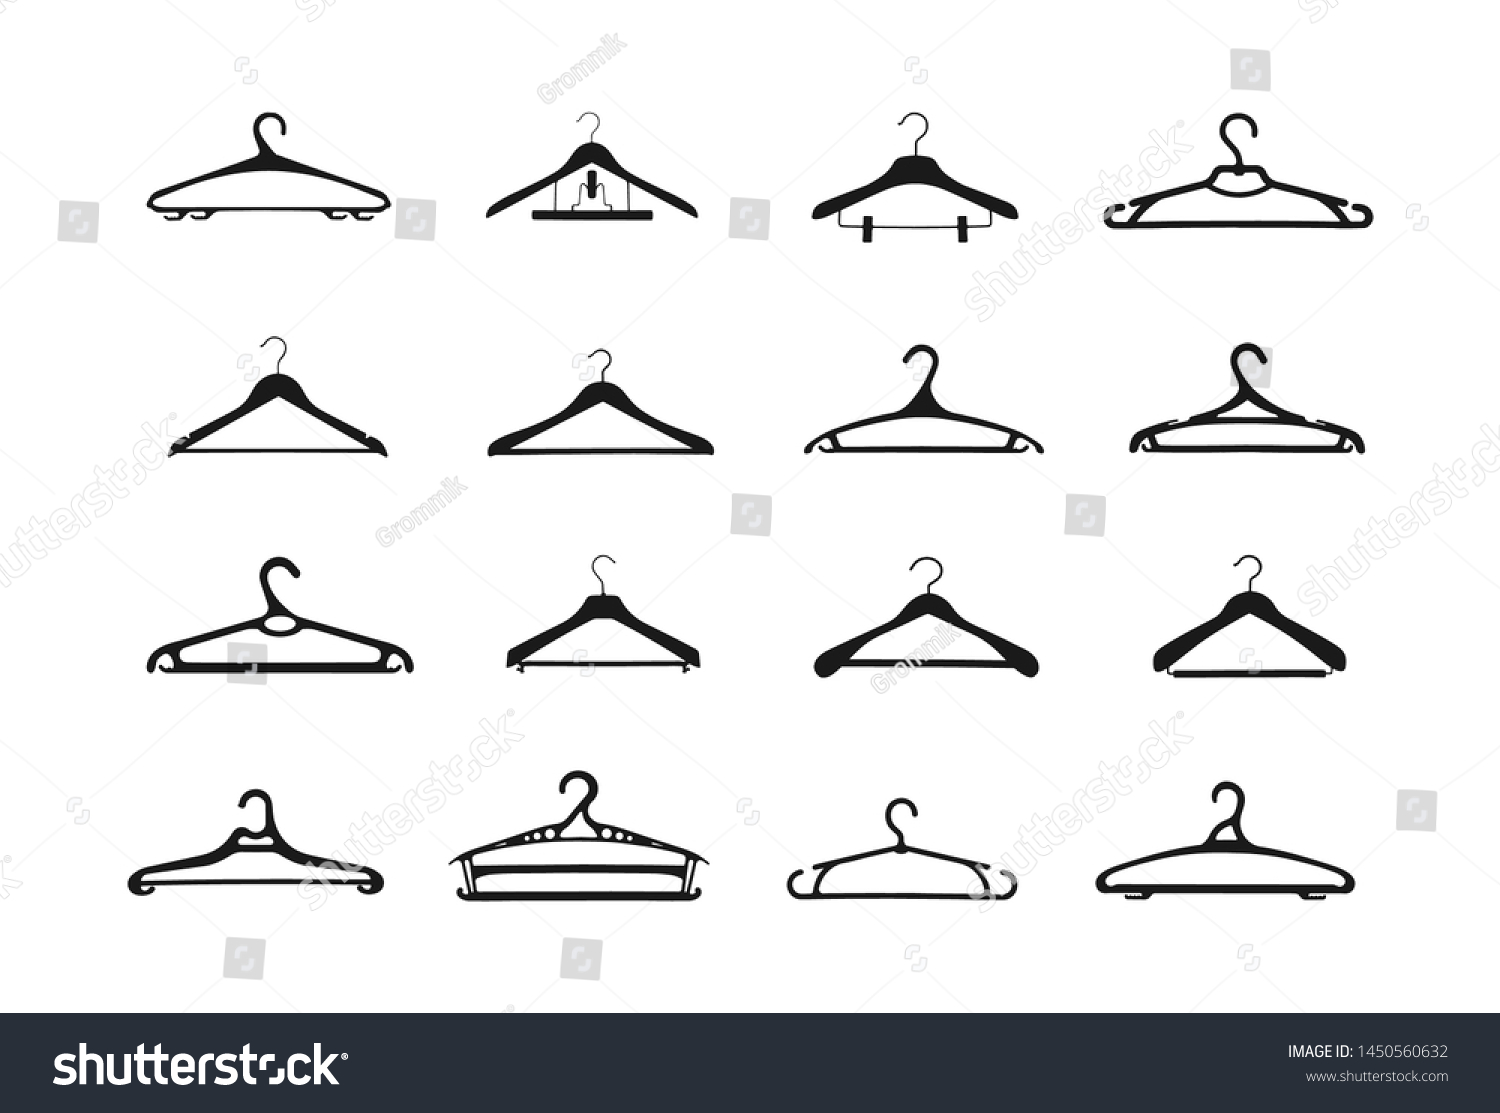 flat plastic hangers